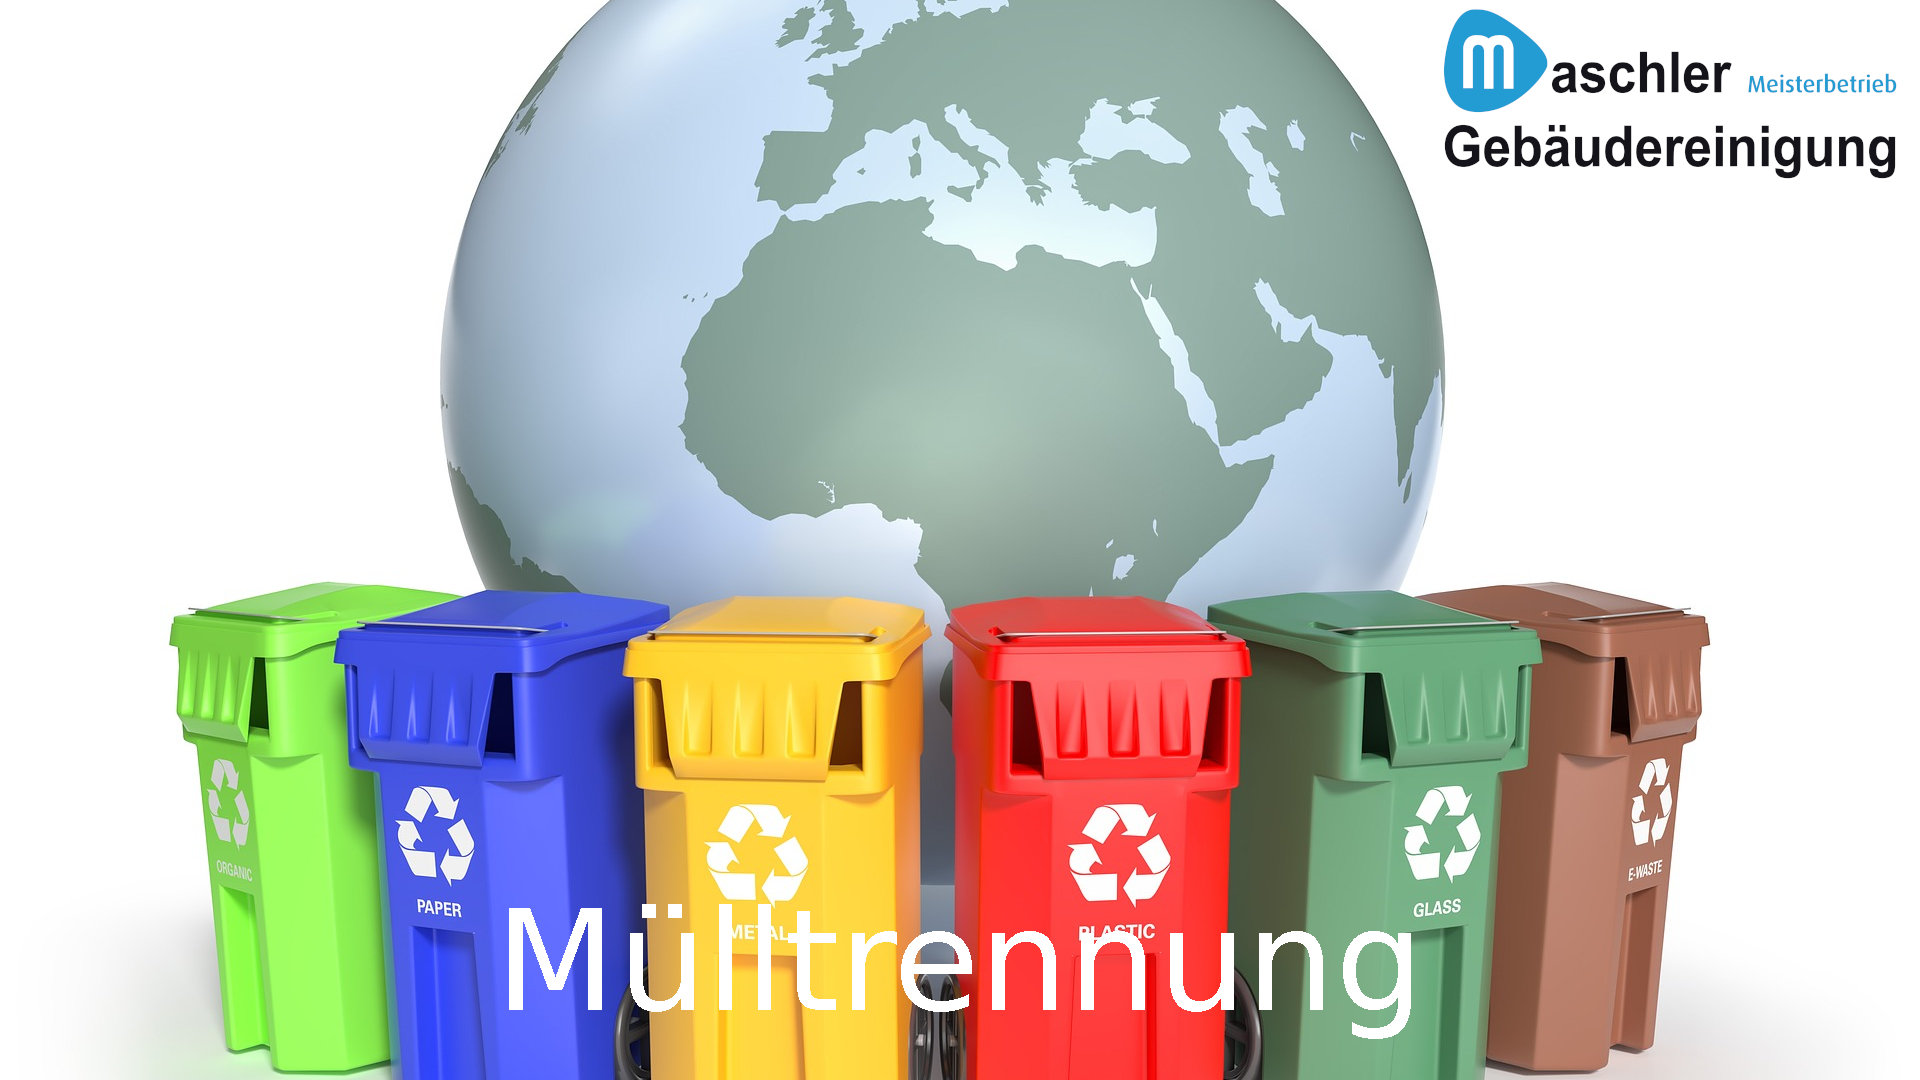 Mülltrennung - Gebäudereinigung Maschler Schwerin